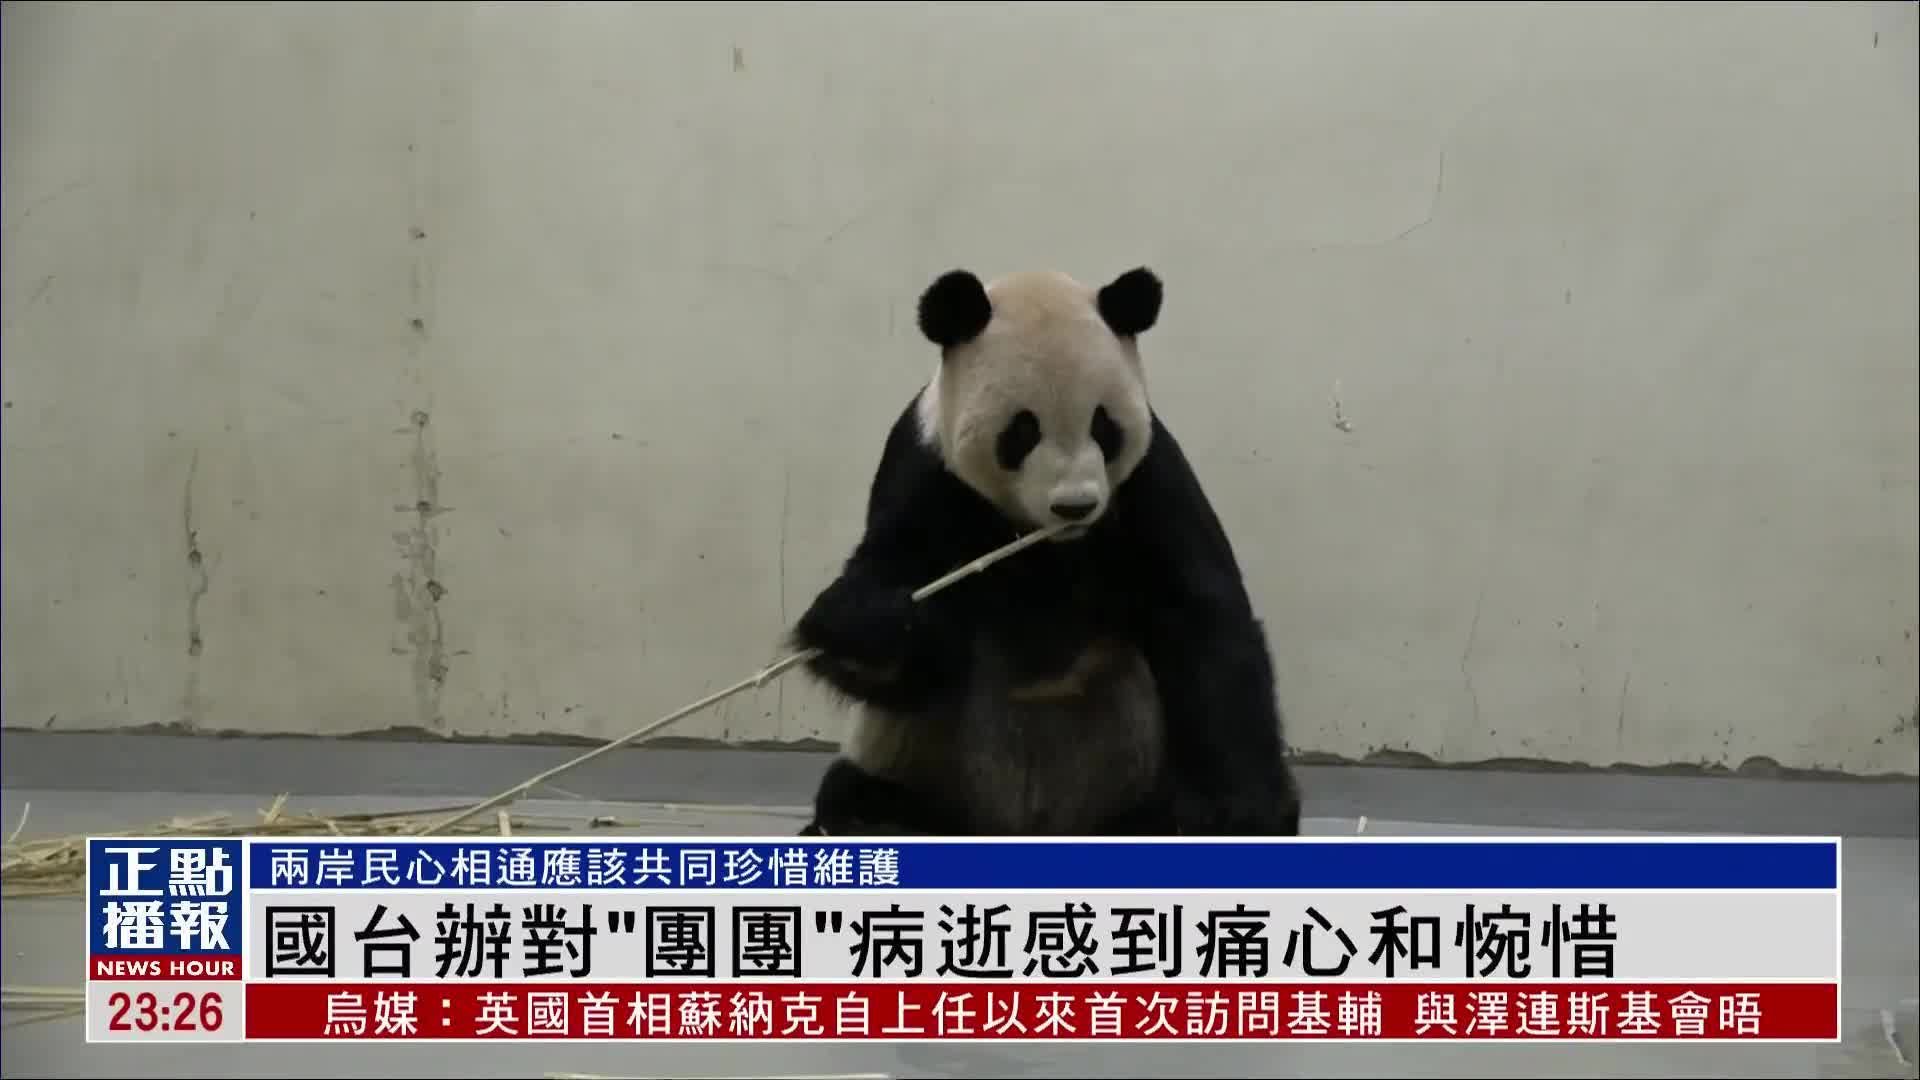 国台办对大熊猫“团团”病逝感到痛心和惋惜